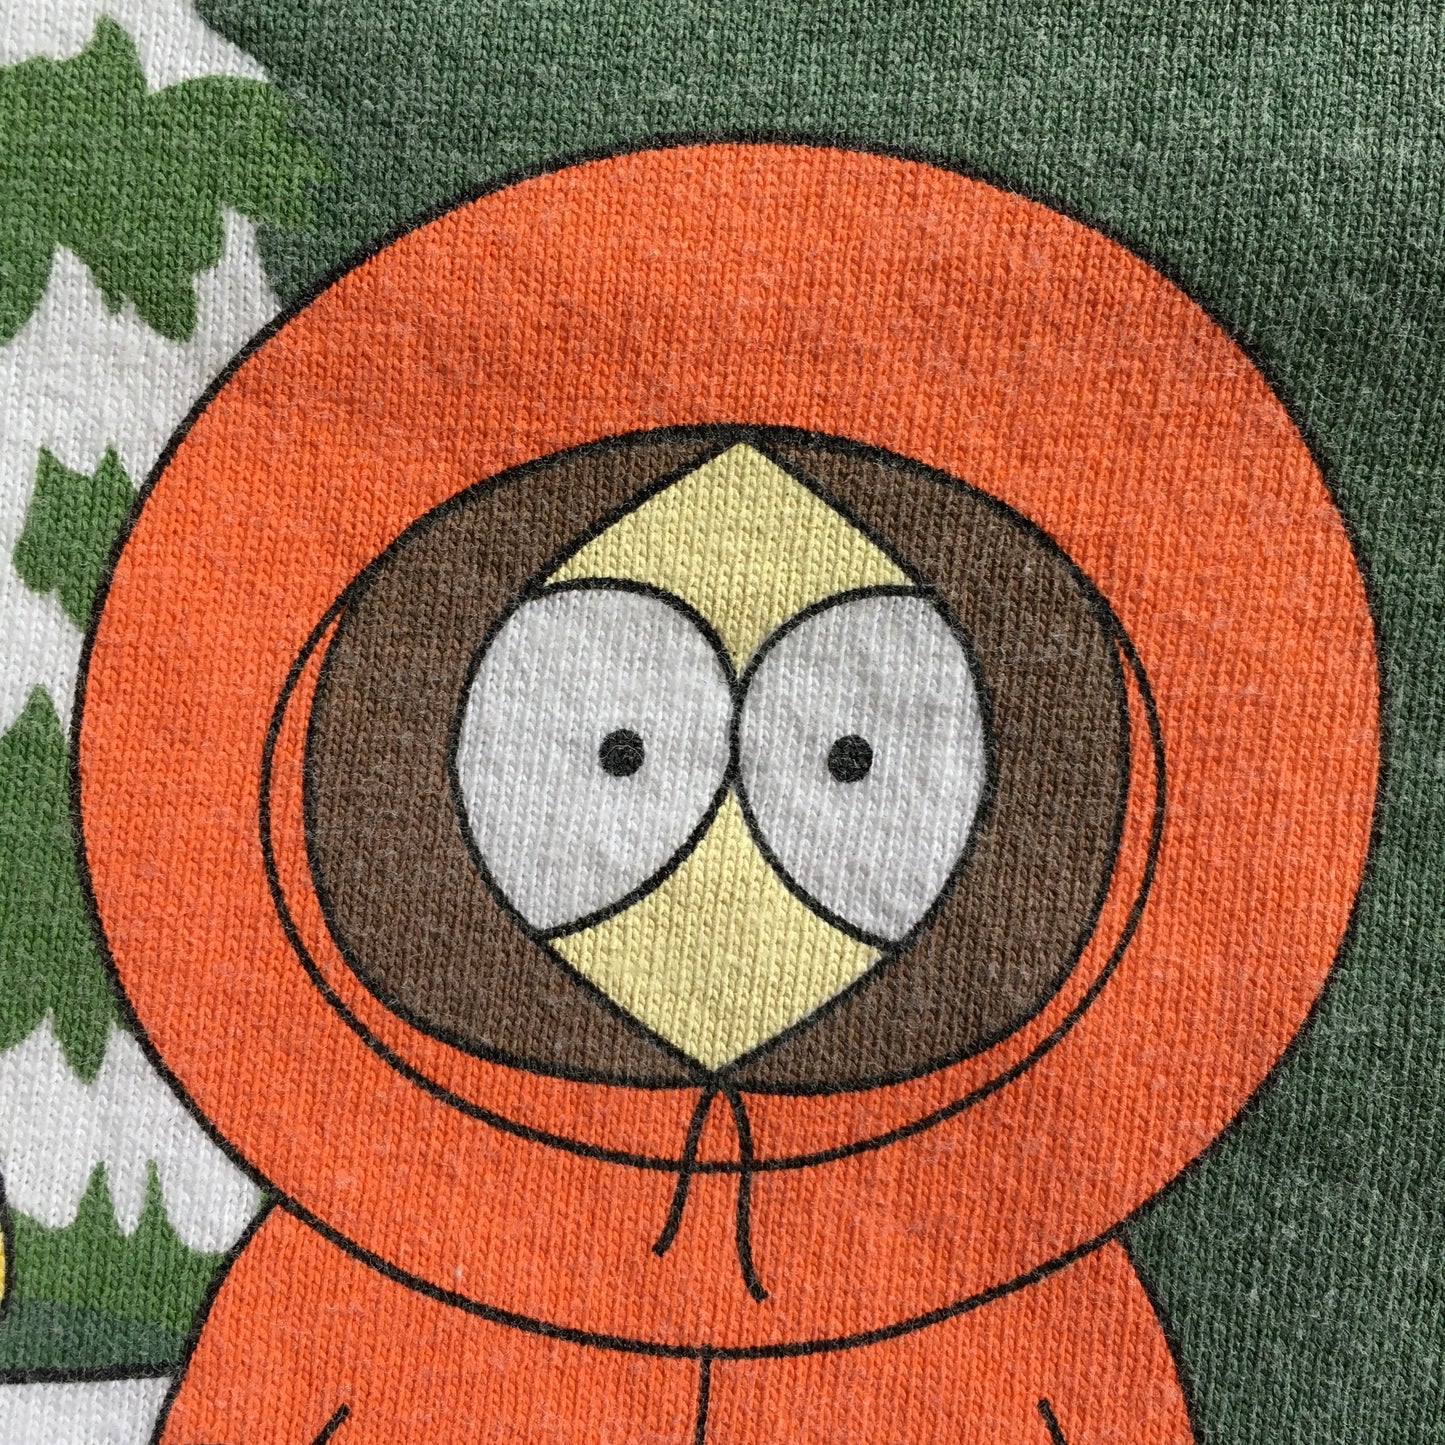 South Park "Portrait" 1997 Shirt - XL